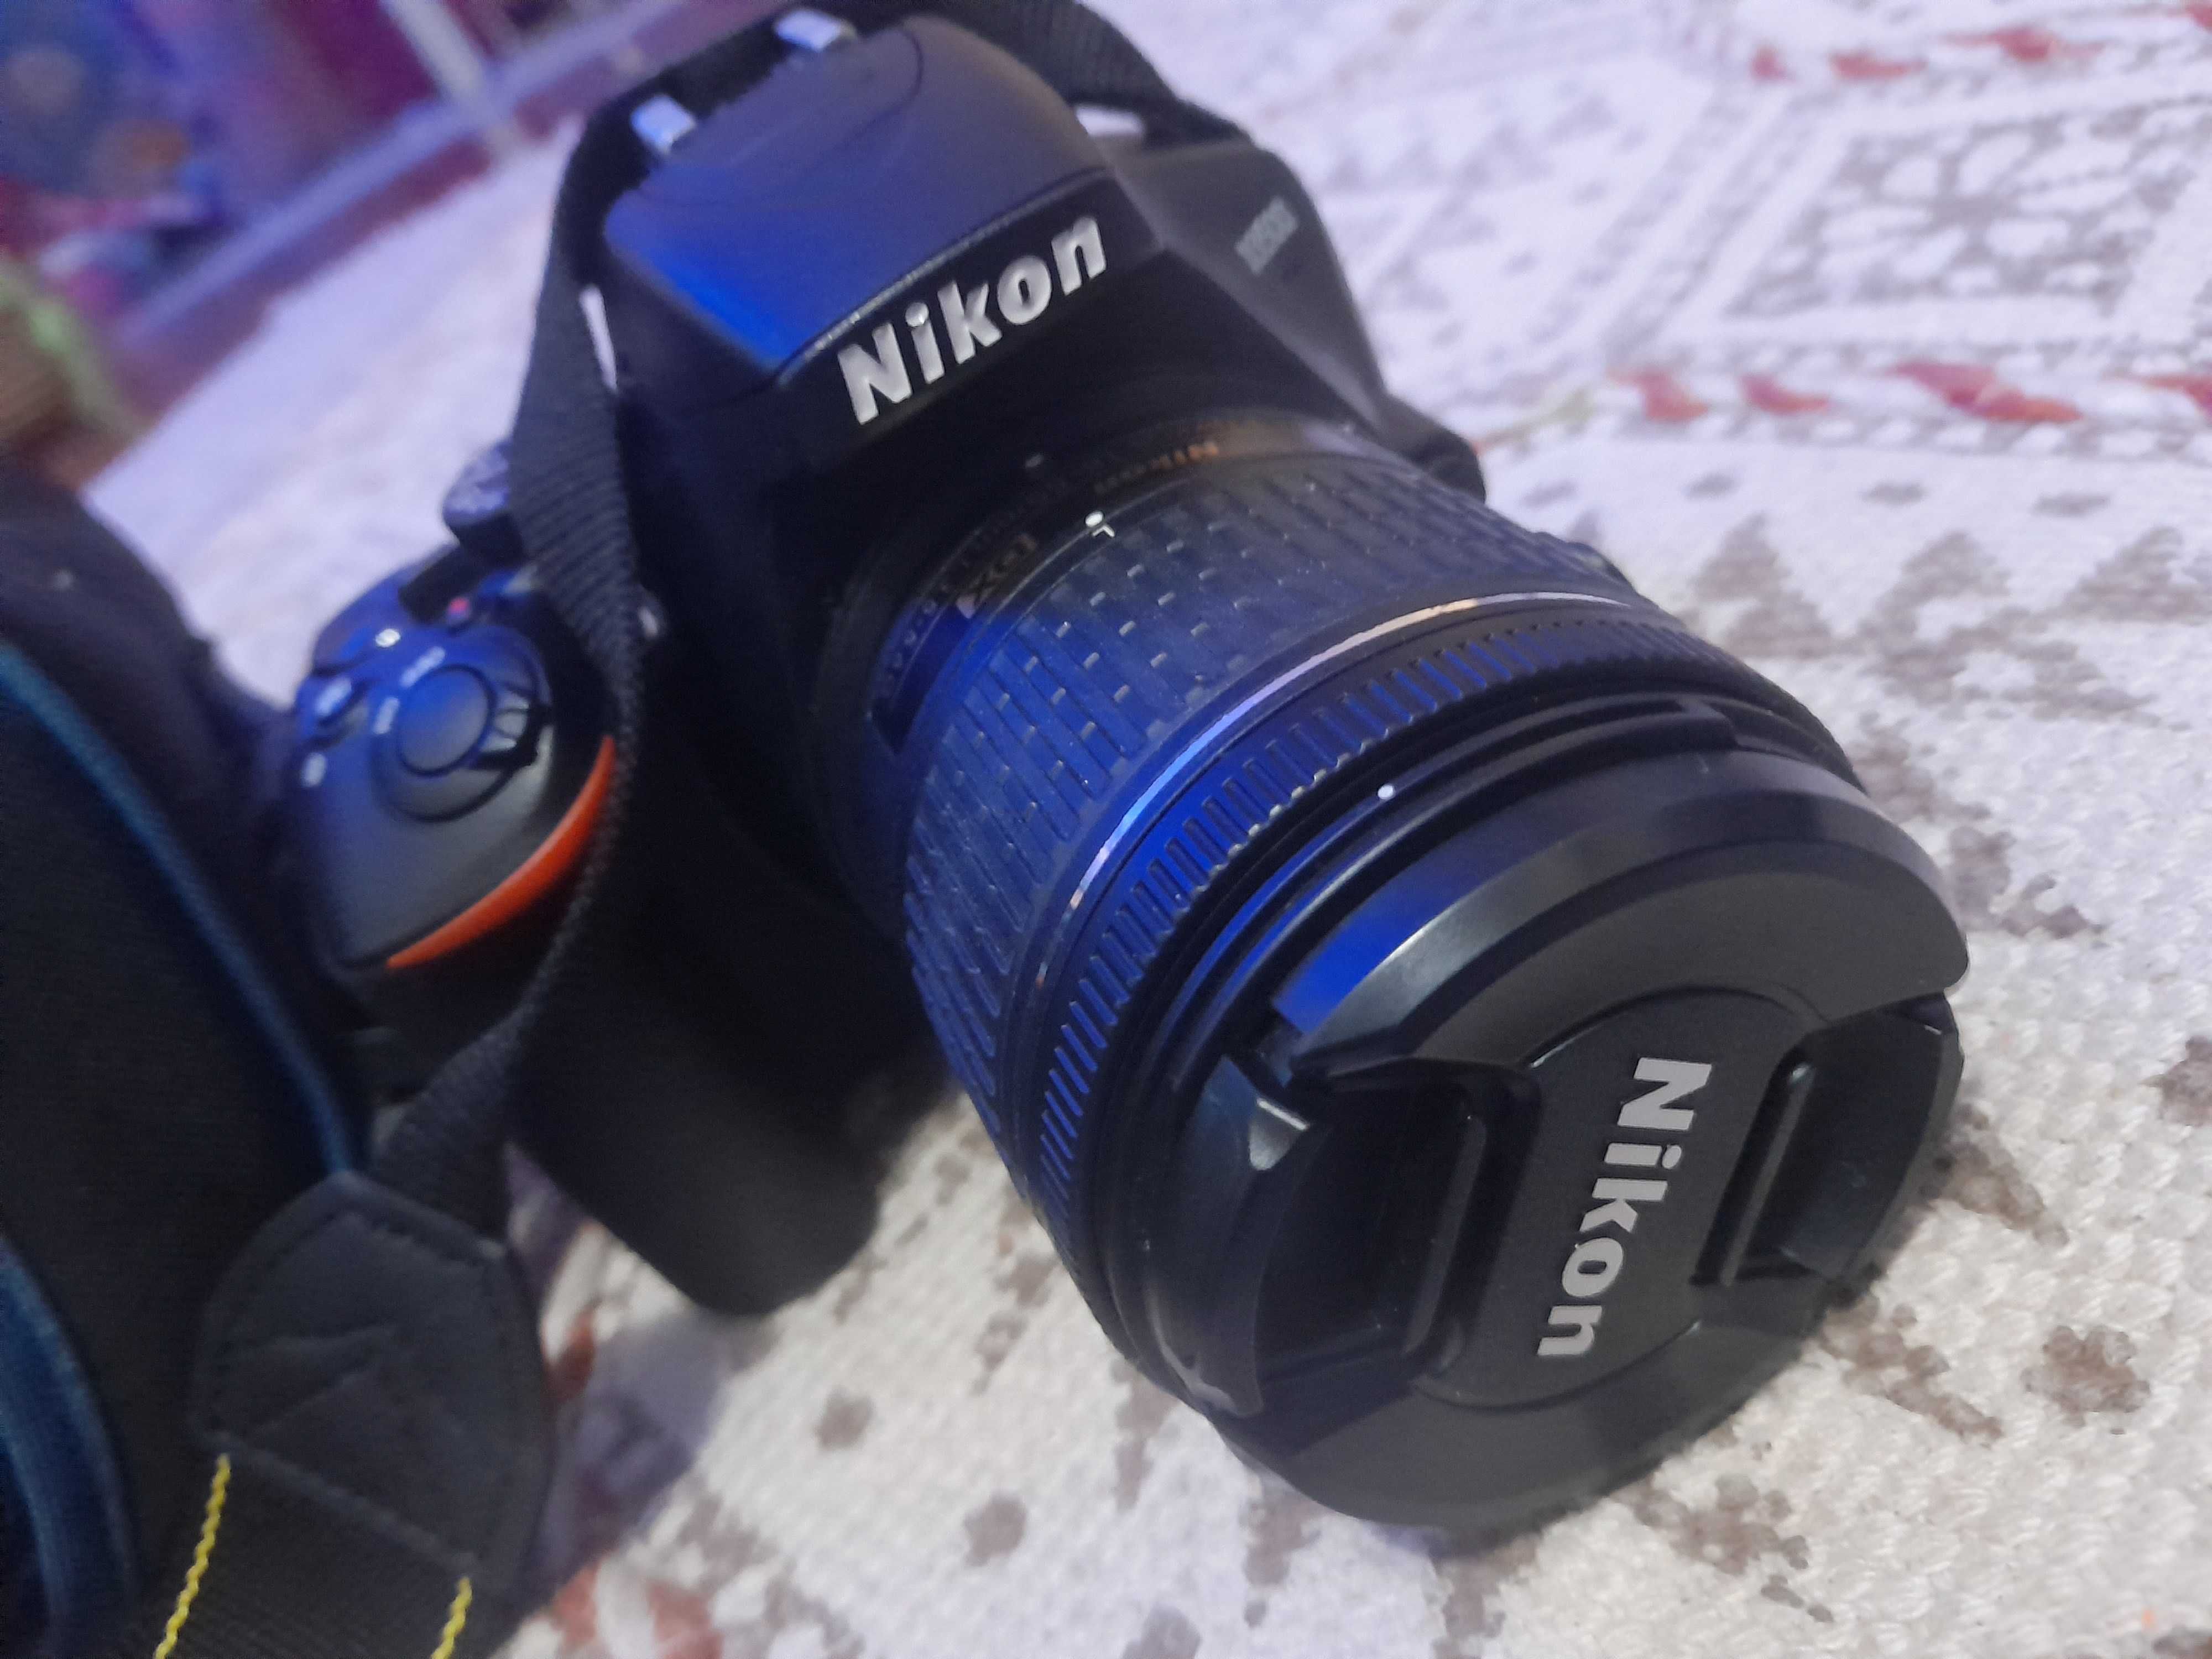 Nikon D3500, 18-55mm